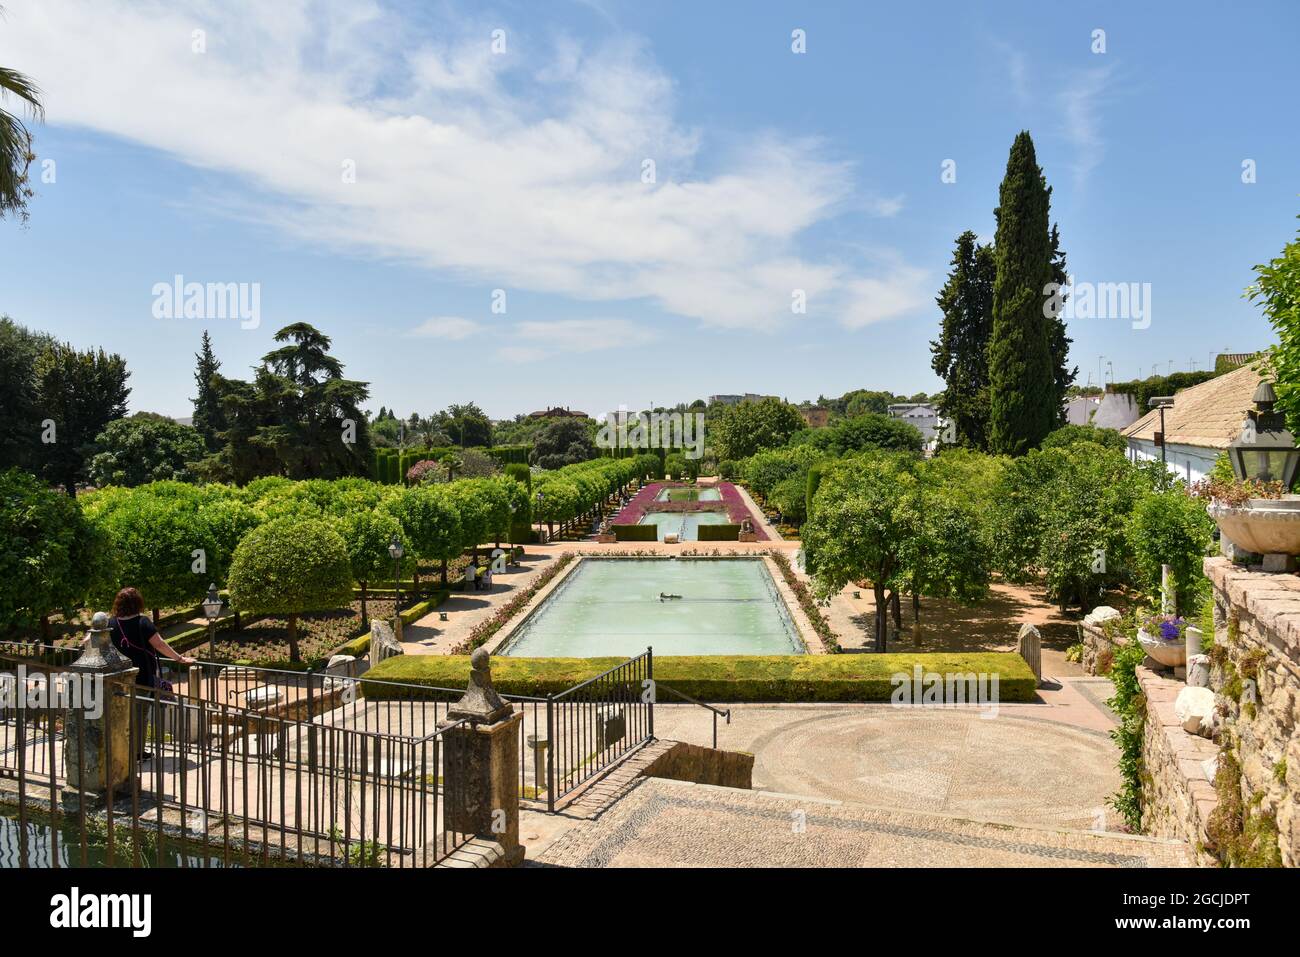 Córdoba Andalucía España jardines de el alcázar de los reyes cristianos 2021 Stock Photo